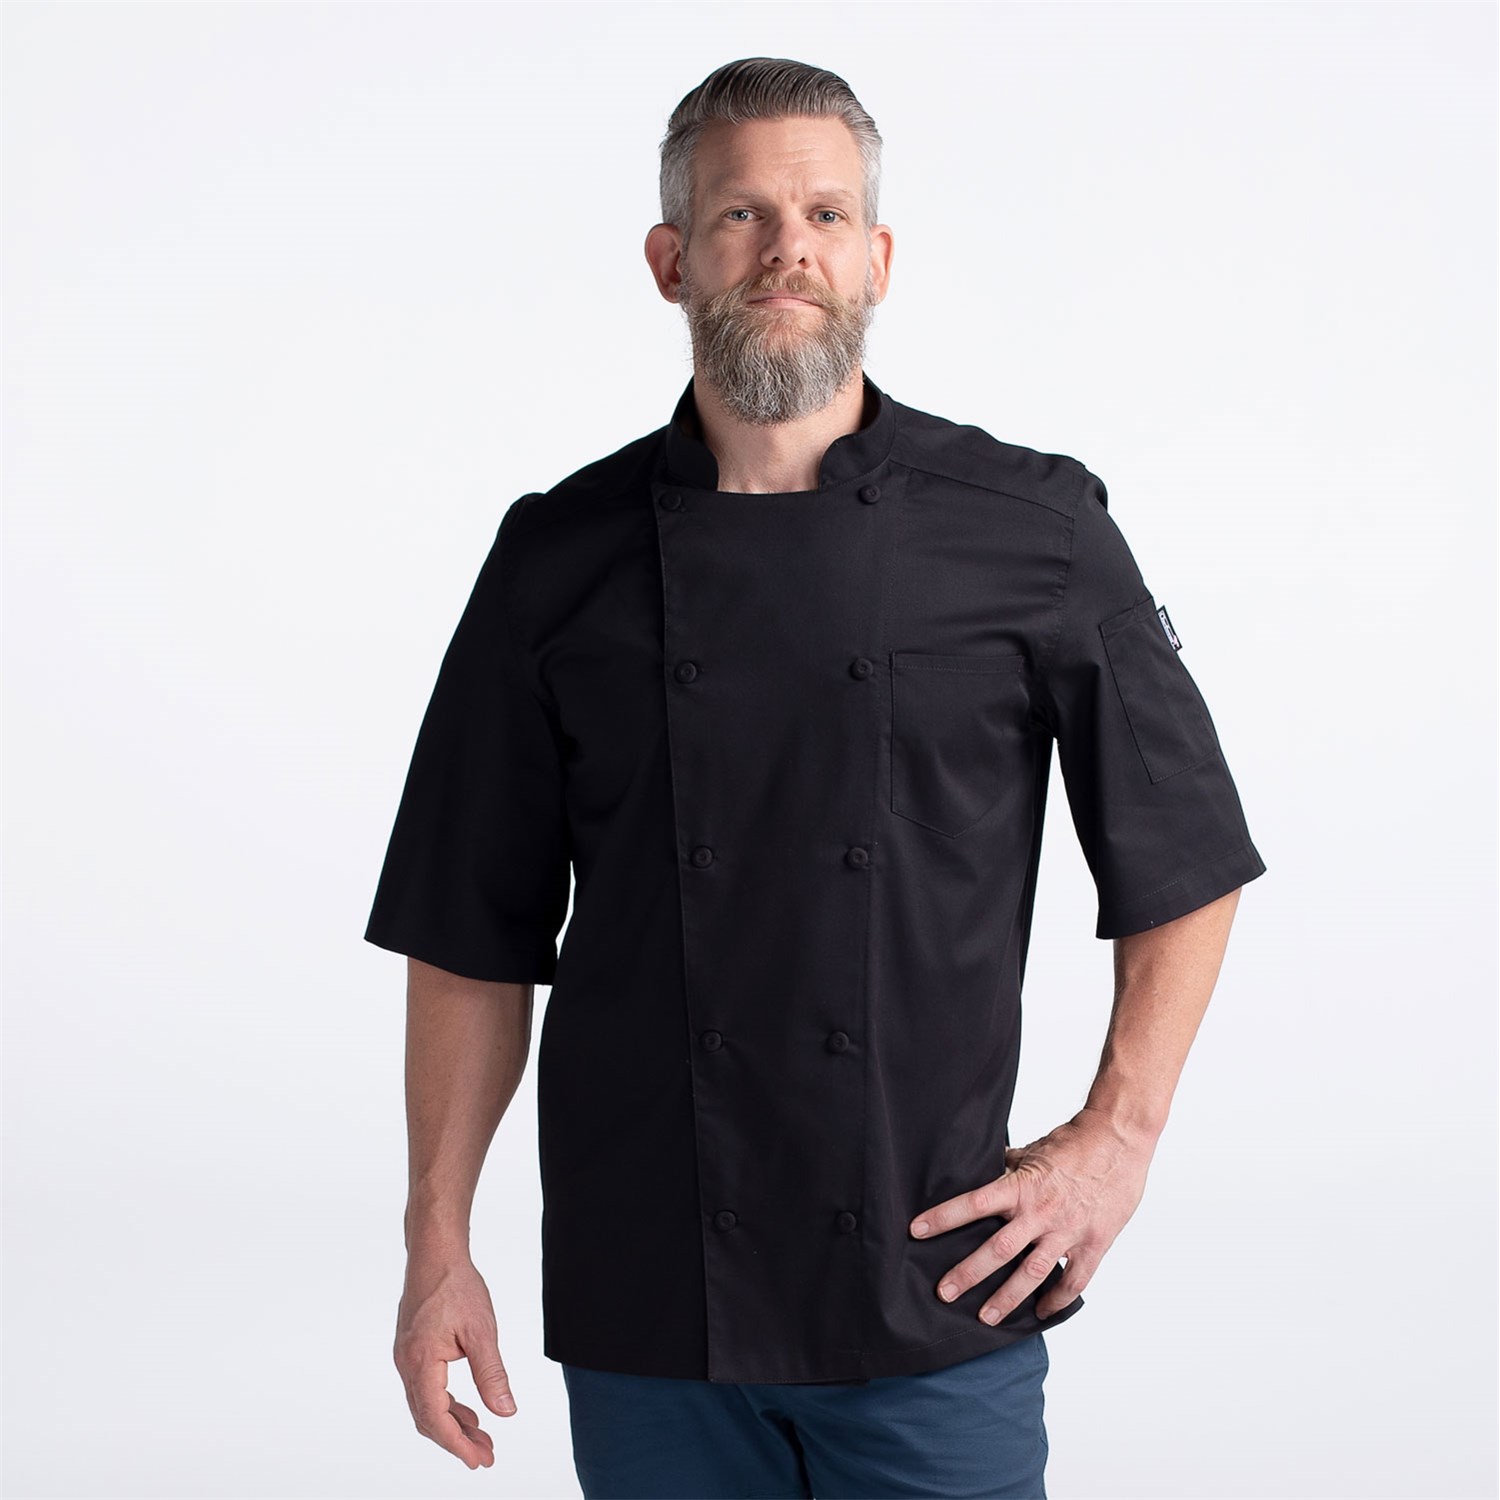 BOUPIUN Summer Chef Coat Unisex Chefwear Short Sleeve Cool Chef Jacket Uniform Kitchen Restaurant 